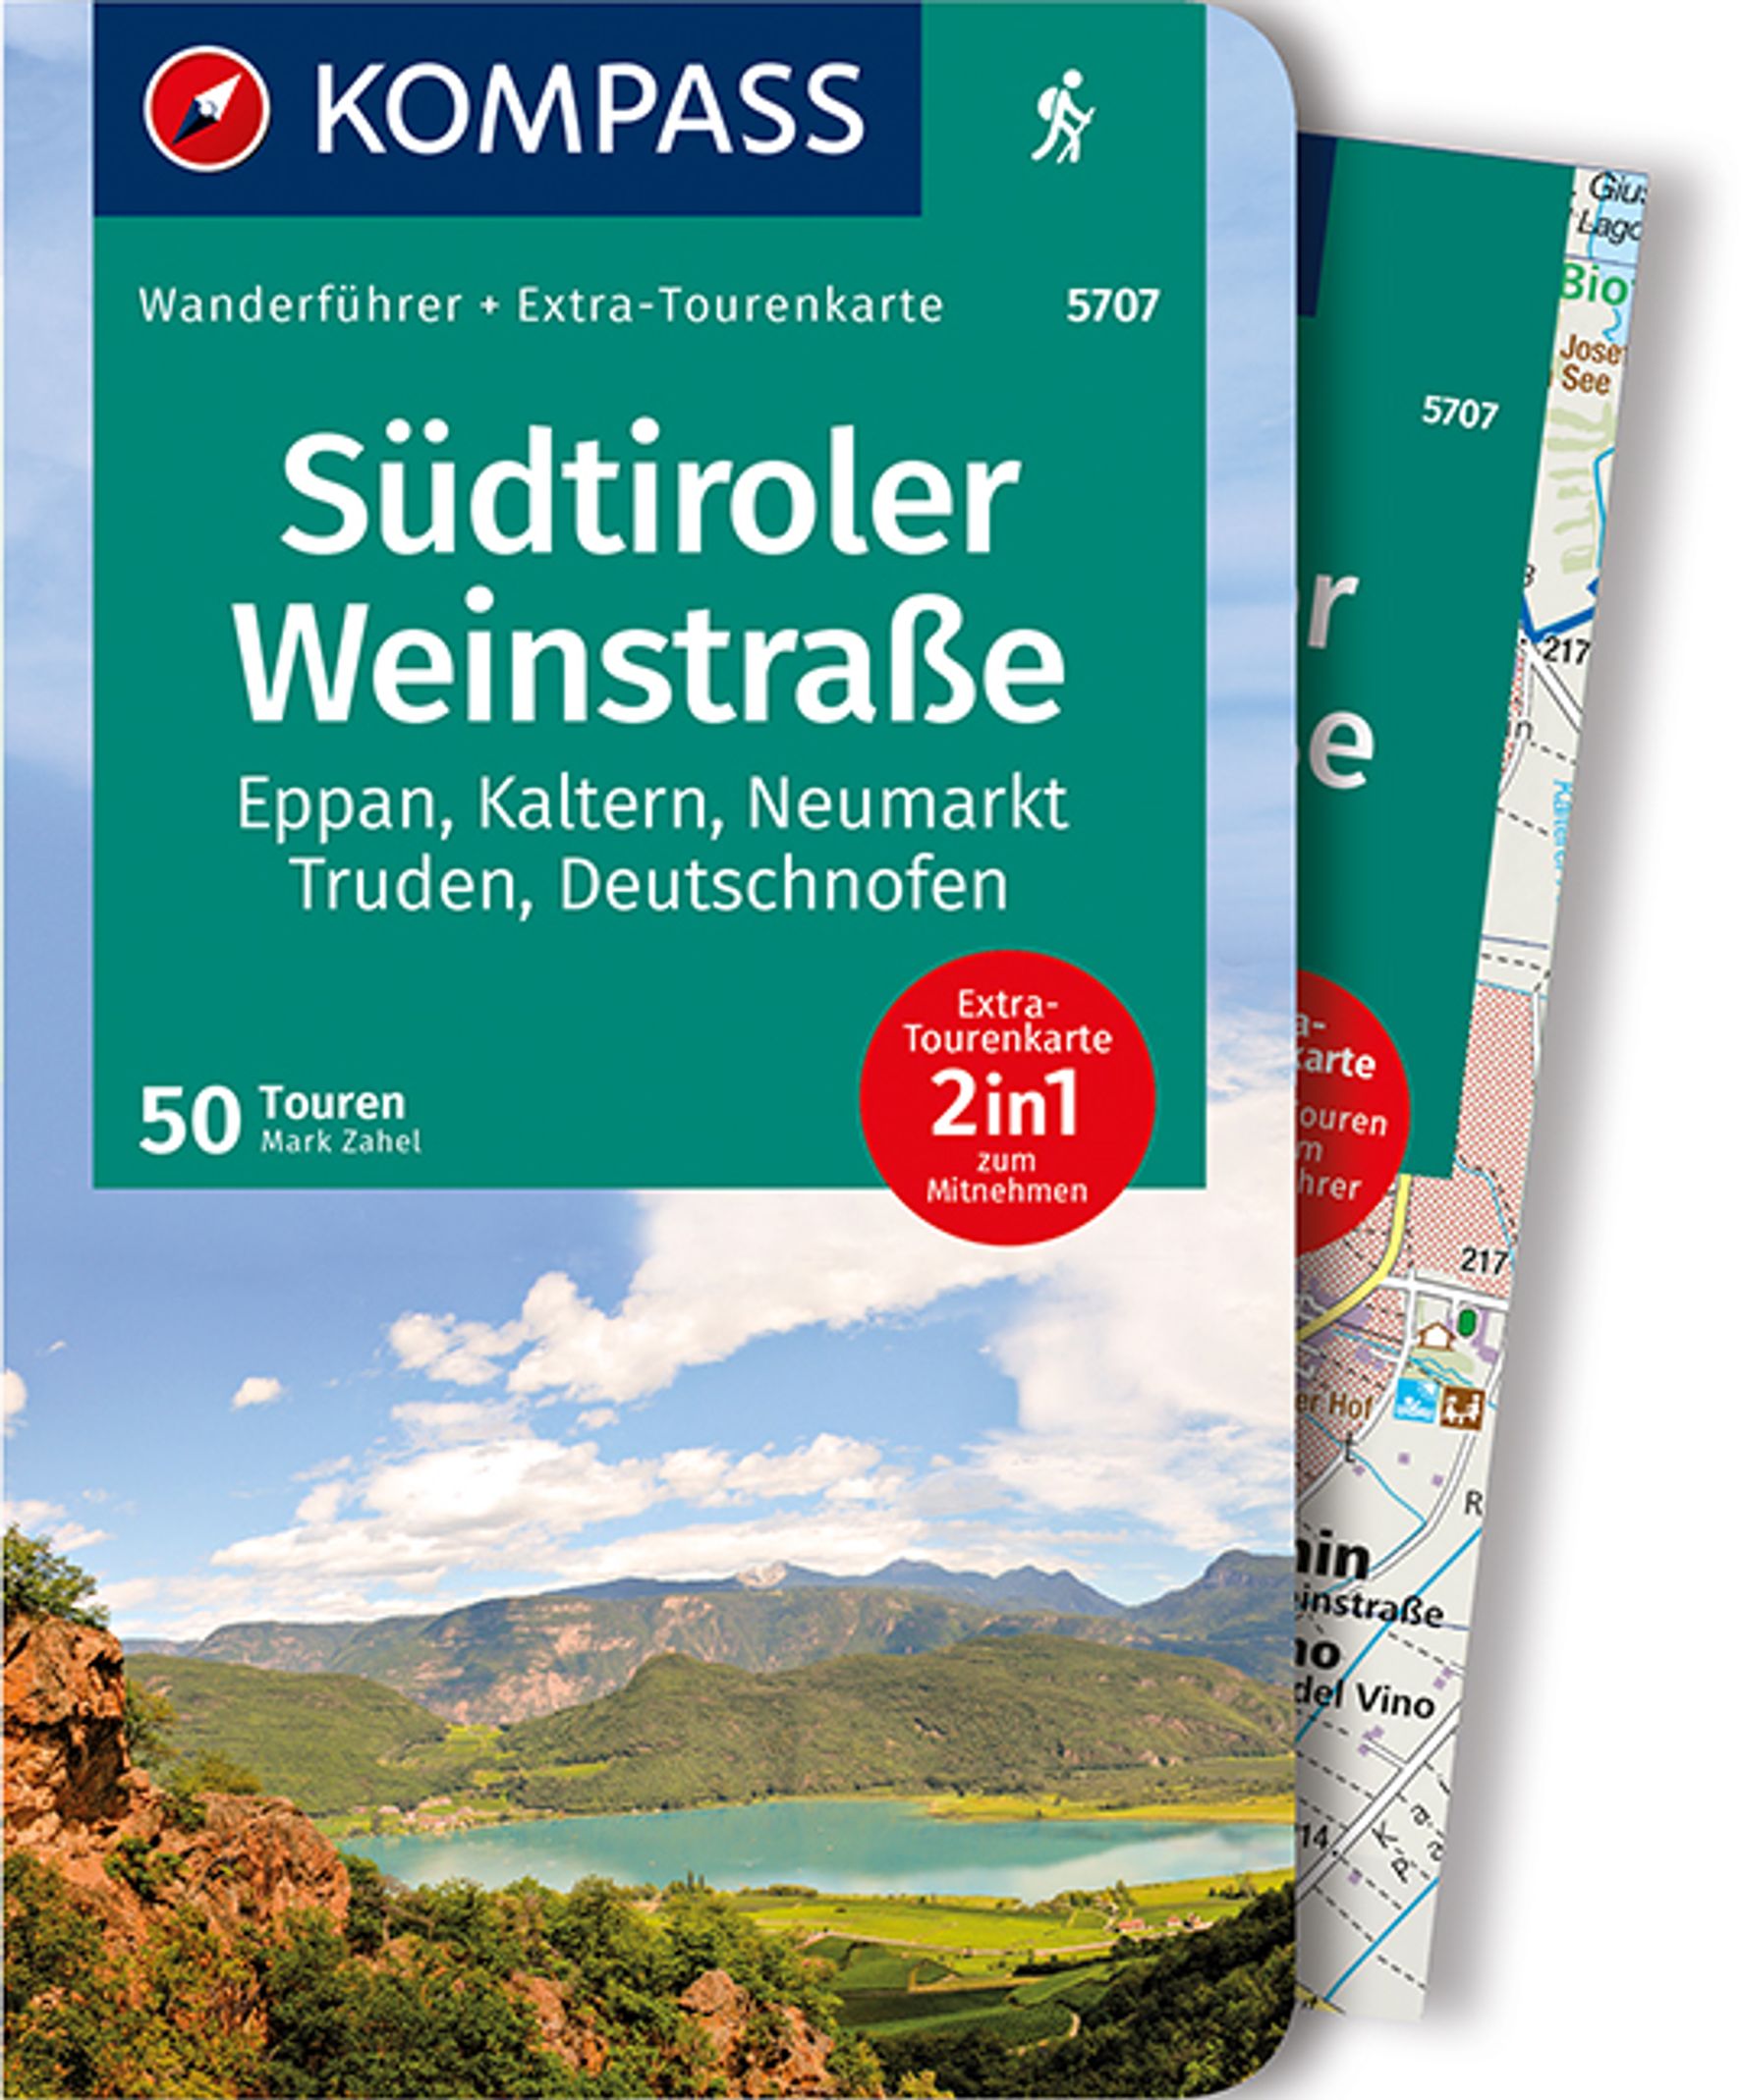 MAIRDUMONT Südtiroler Weinstraße, 50 Touren mit Extra-Tourenkarte